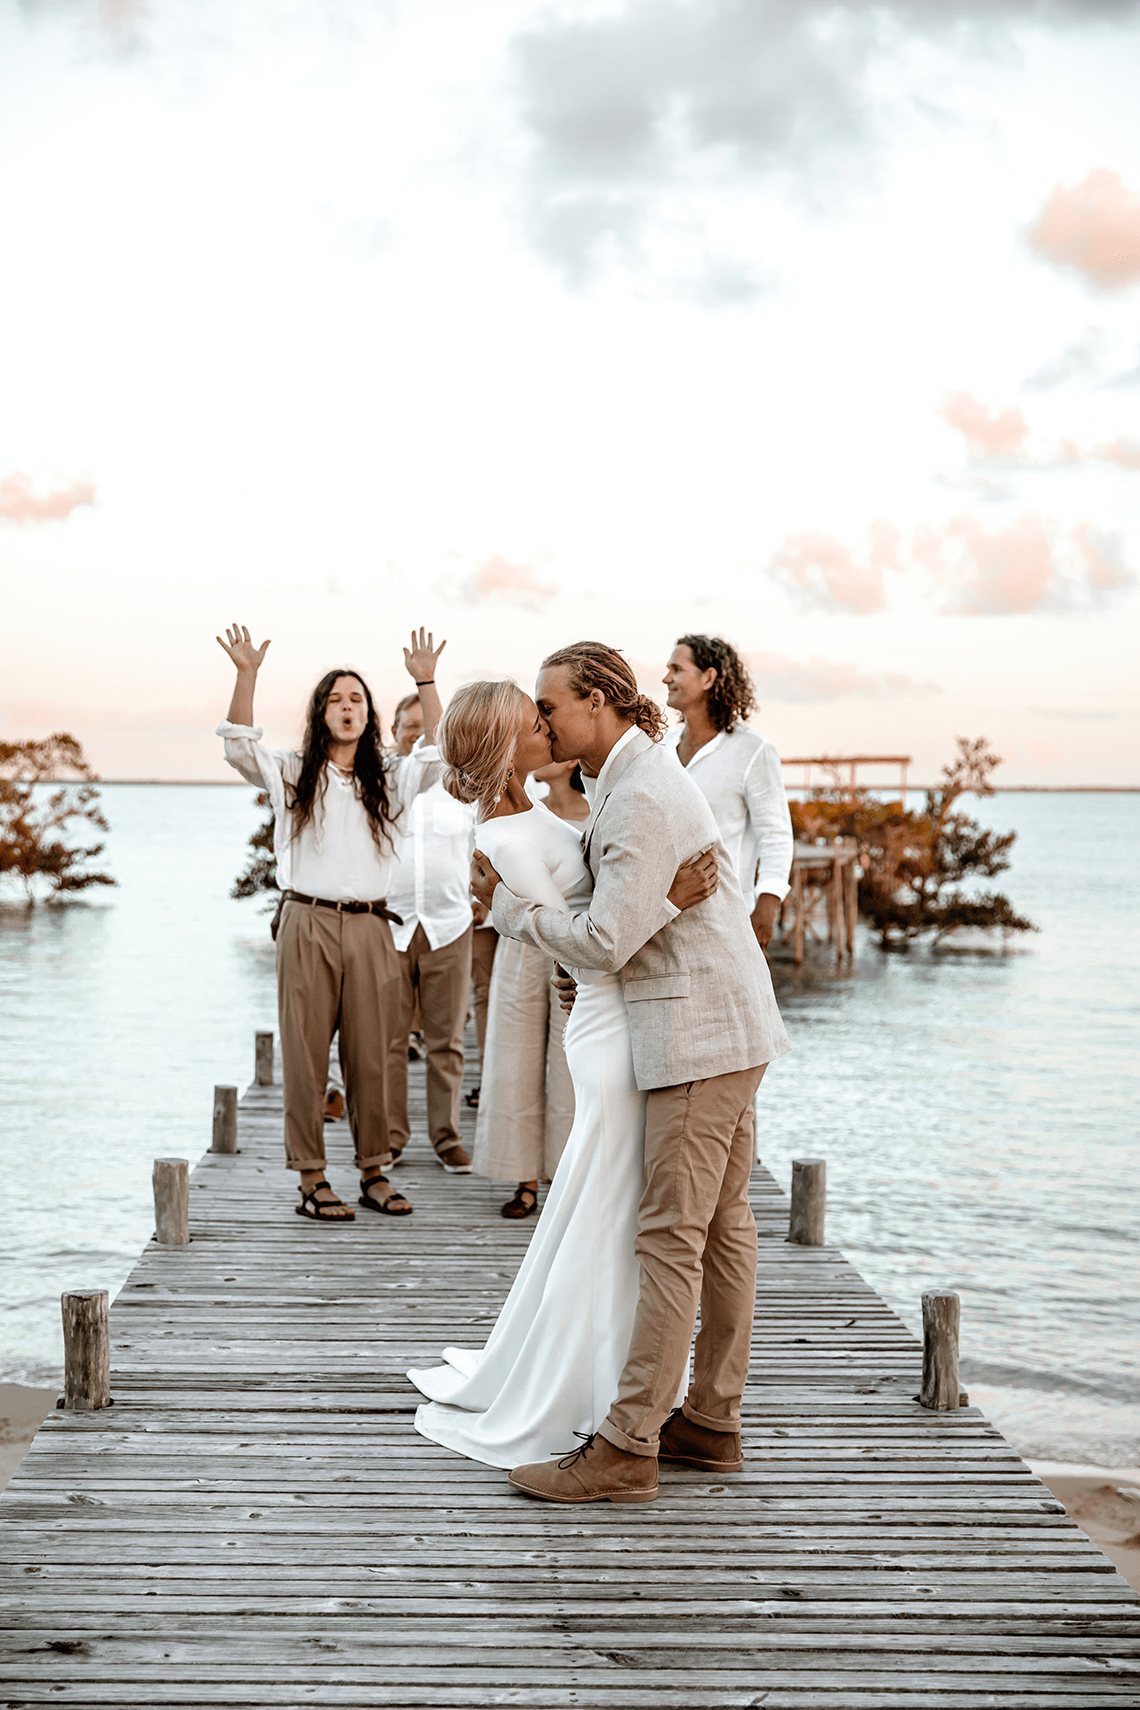 Stunning Mozambique Beach Wedding at Sunrise Sussurro Ayeh Photography Bo and Luca Bridal Musings 61 - Mẹo Lập kế hoạch & Cảm hứng Đám cưới Tốt nhất từ ​​khắp Châu Phi